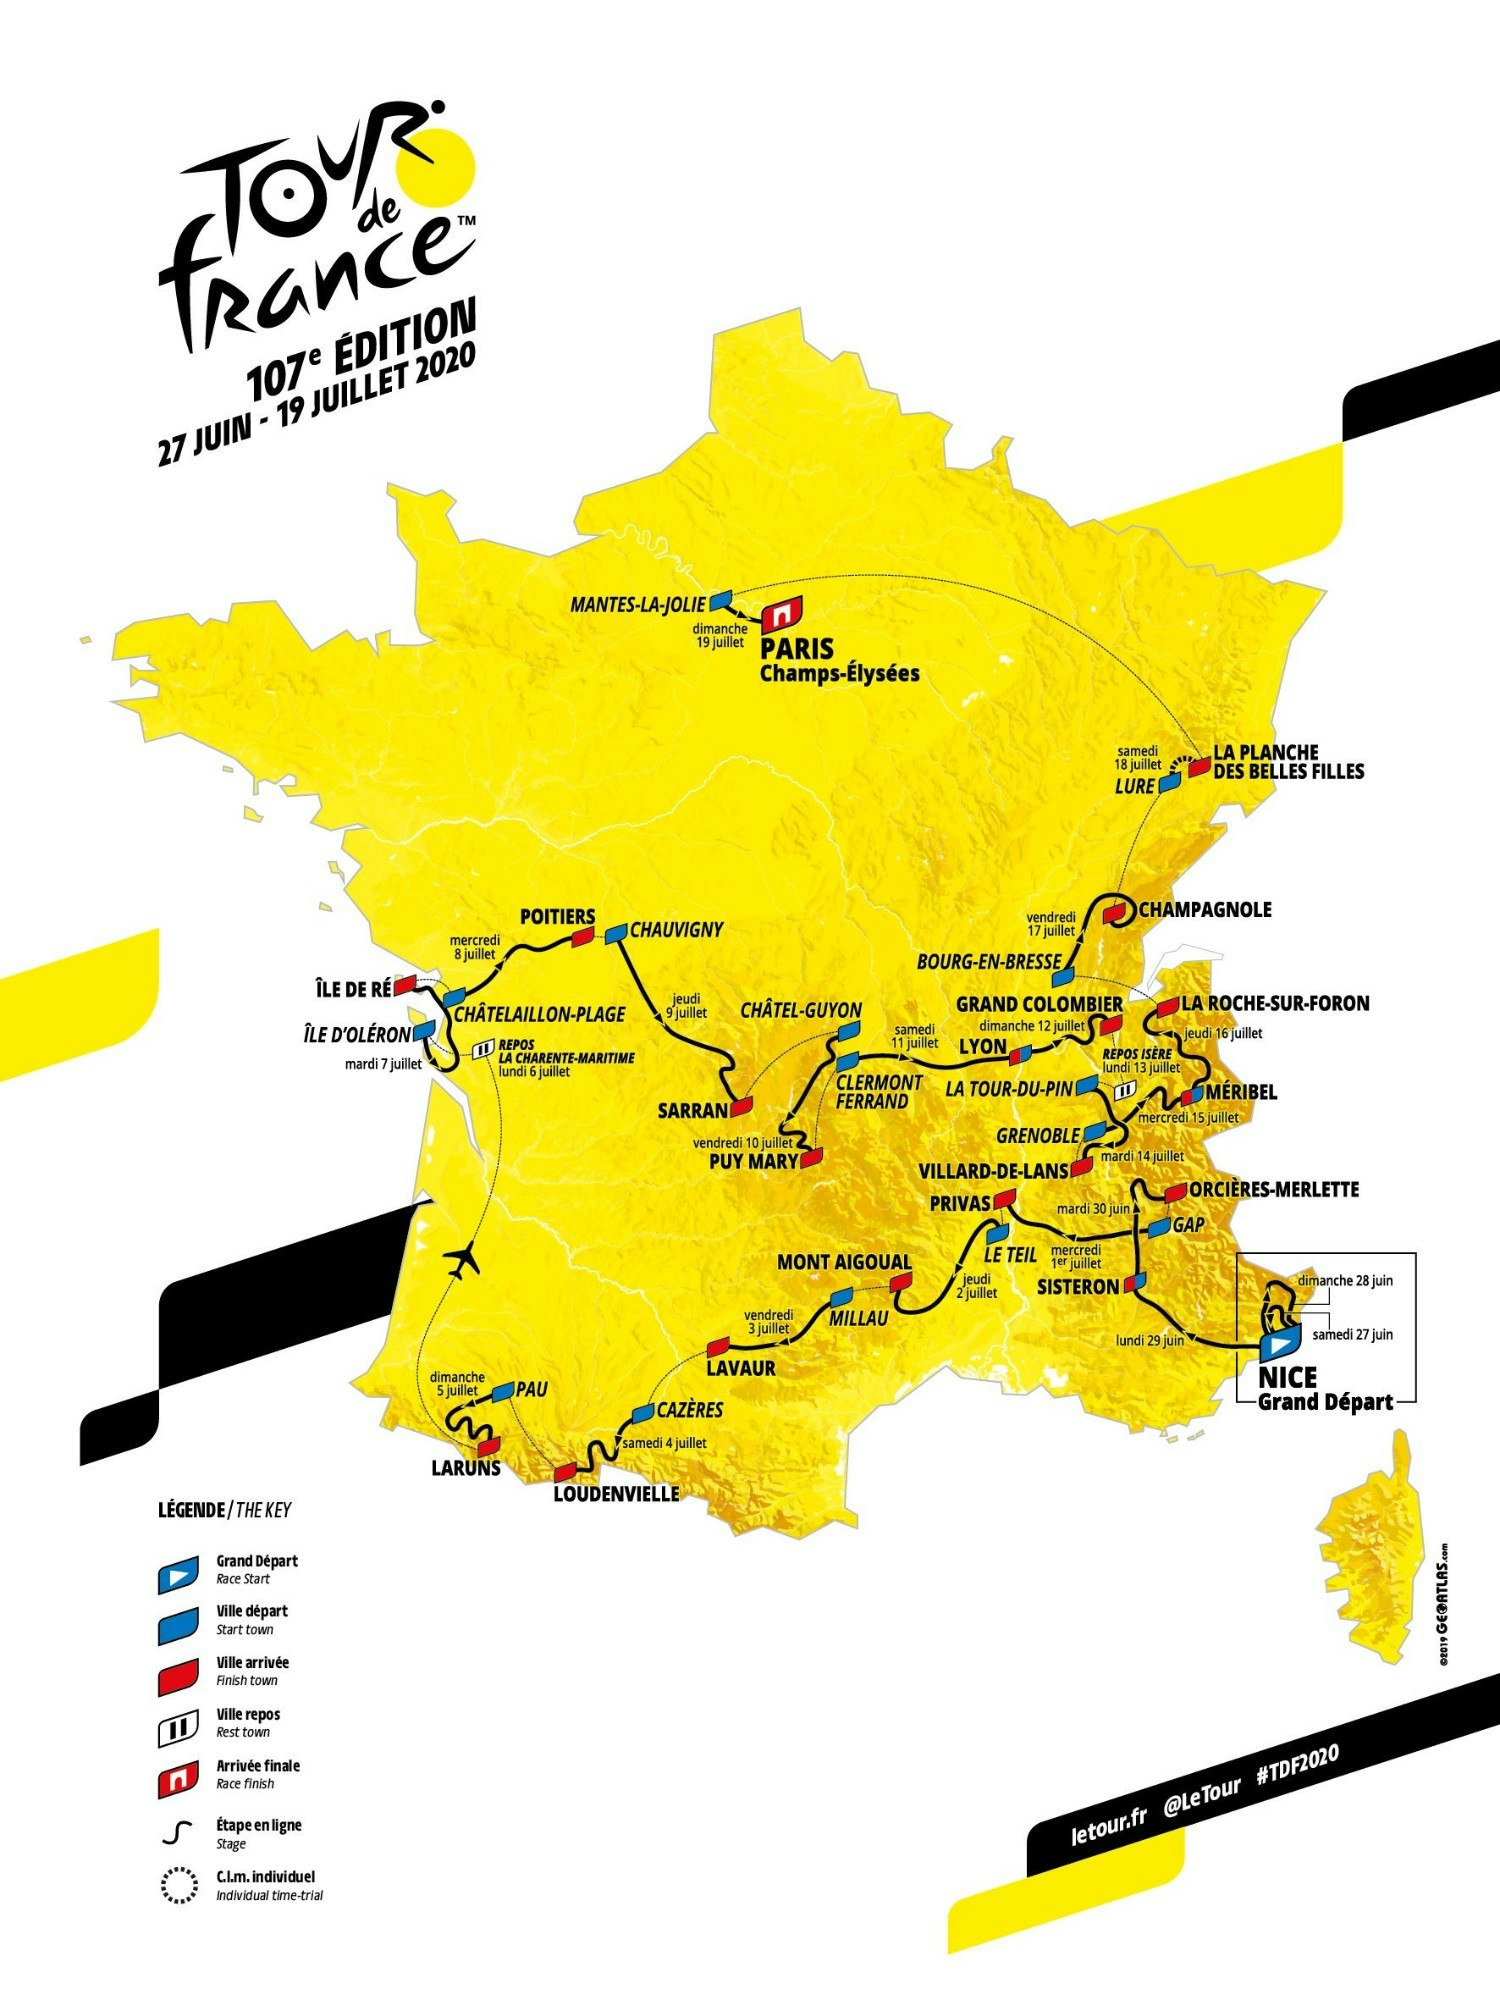 The route of the Tour de France 2020